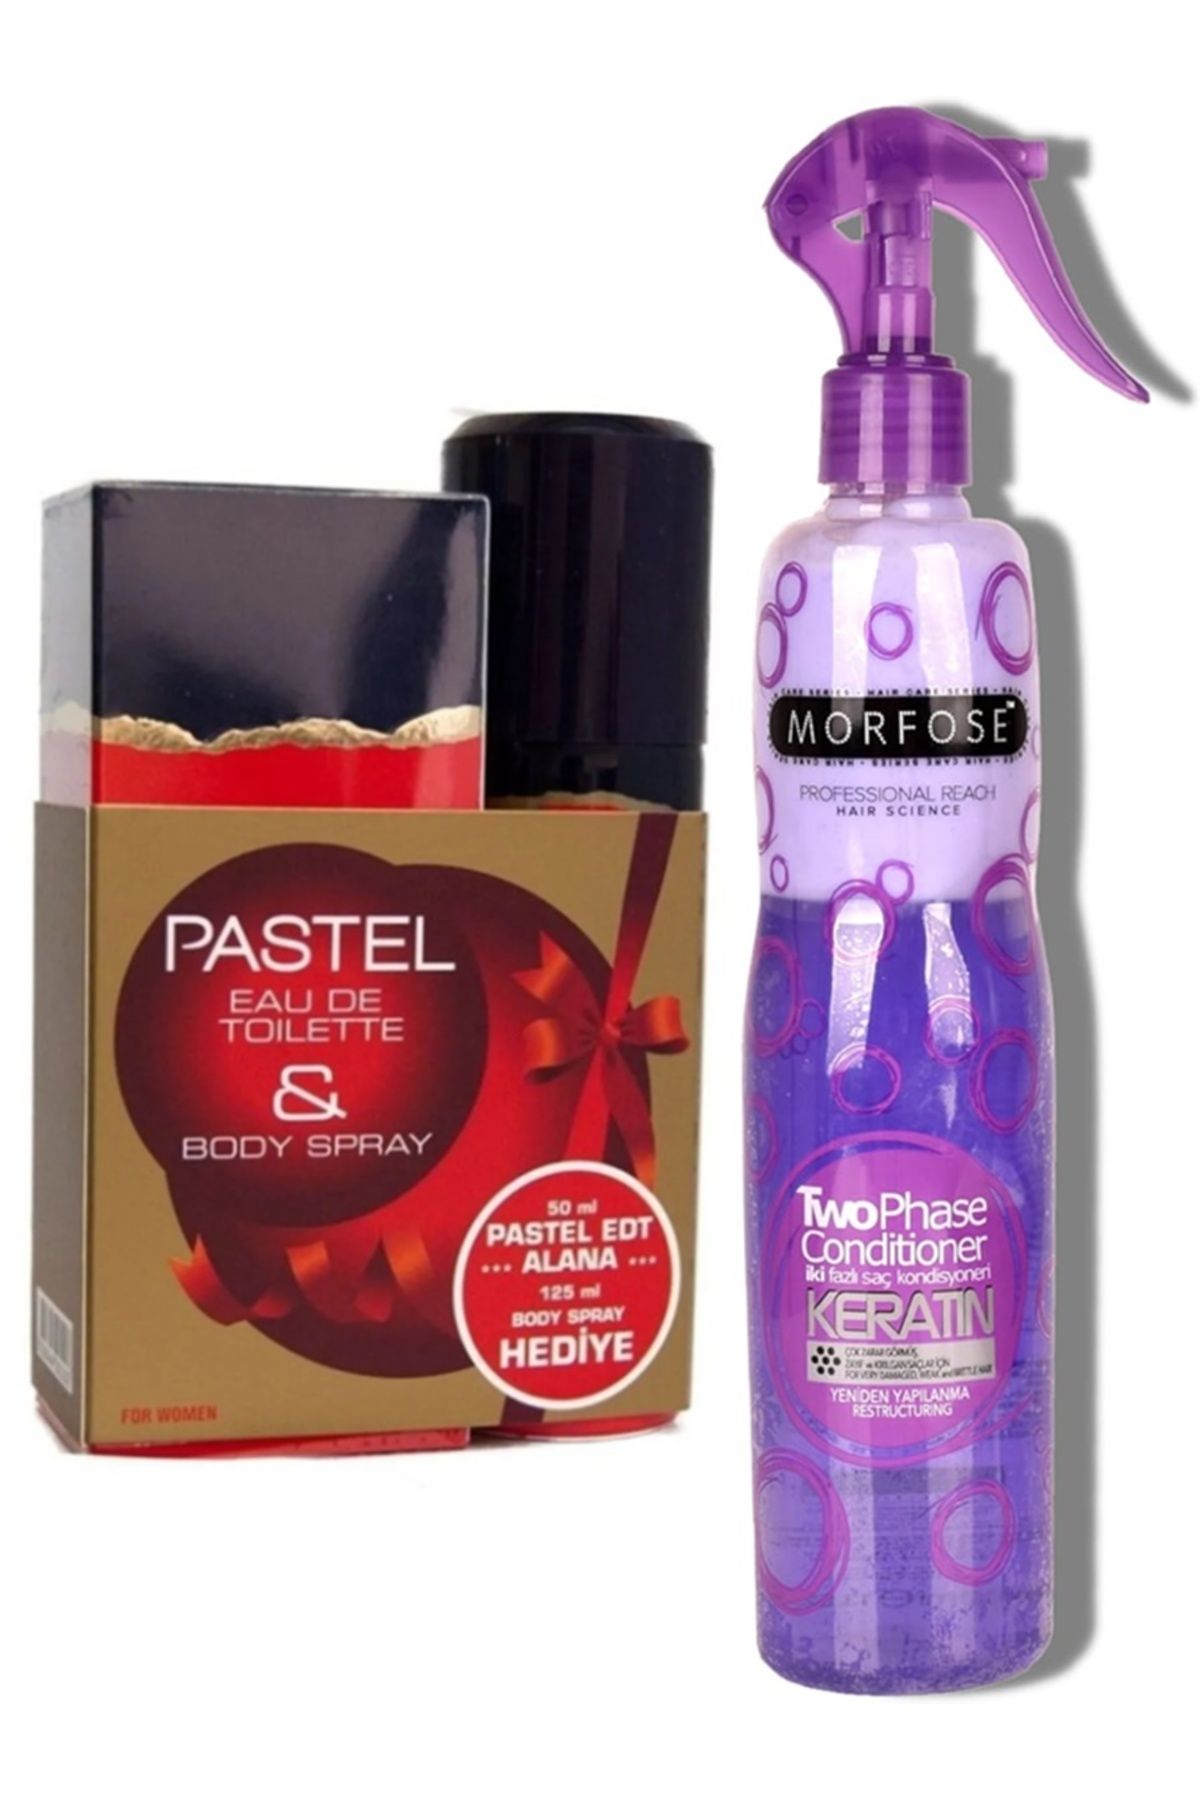 Pastel For Women Edt 50ml +125ml Deodorant Kadın Parfüm + Morfose Çift Fazlı Keratin Fön Suyu 400ml